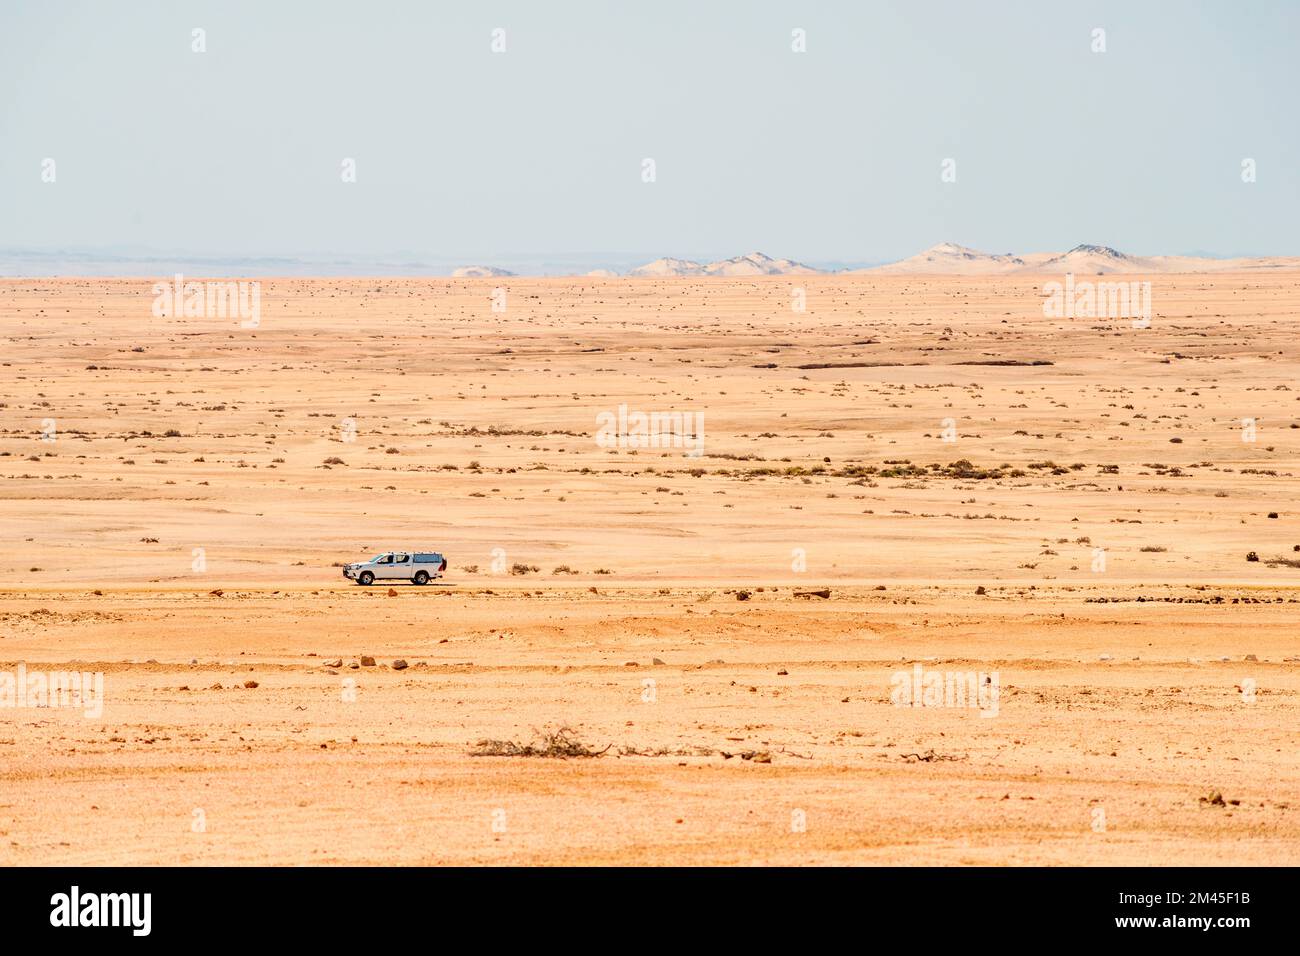 Geländewagen, der sich an sonnigen Tagen auf Schotterstraßen in der endlosen Wüste Namibias bewegt Stockfoto